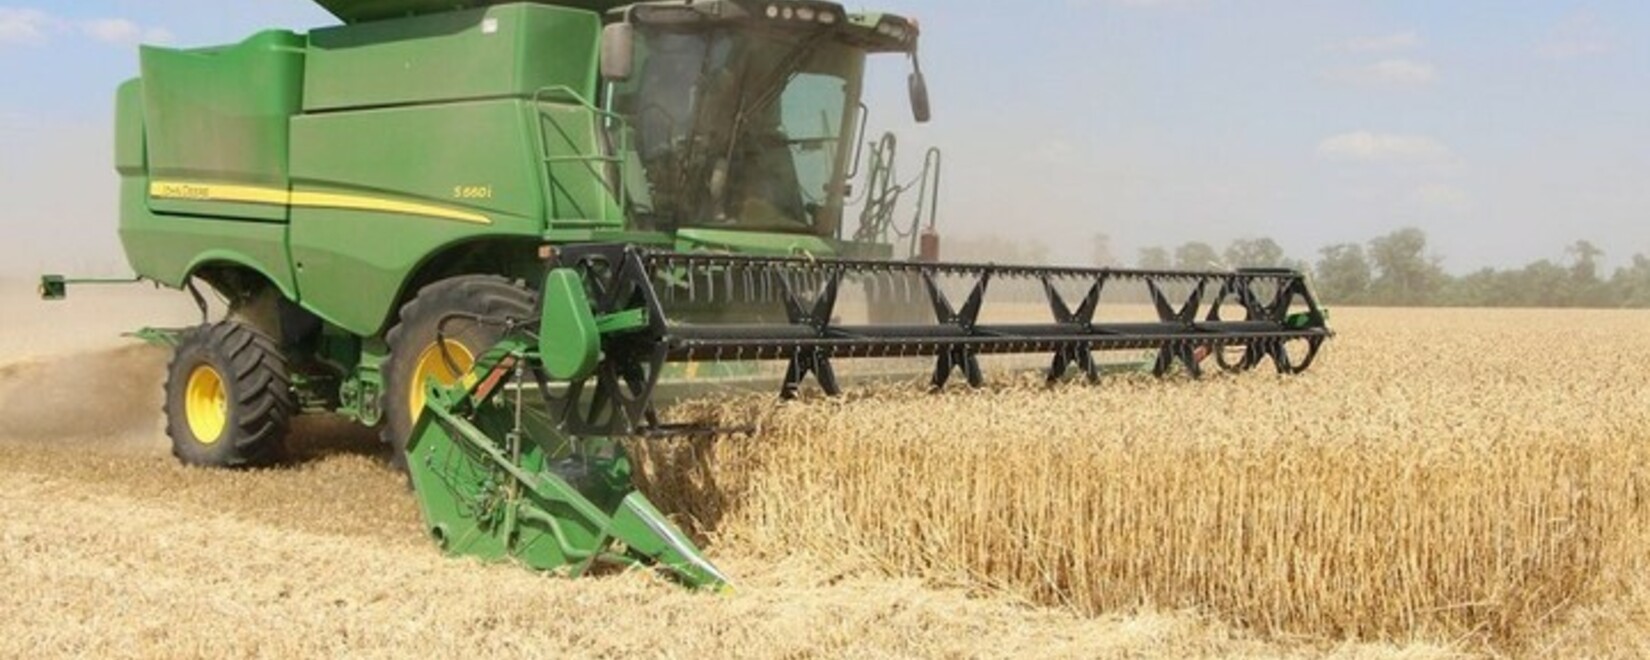 Урожайные старты. Регионы Юга начали уборку зерновых. Главная боль аграриев — падение рентабельности